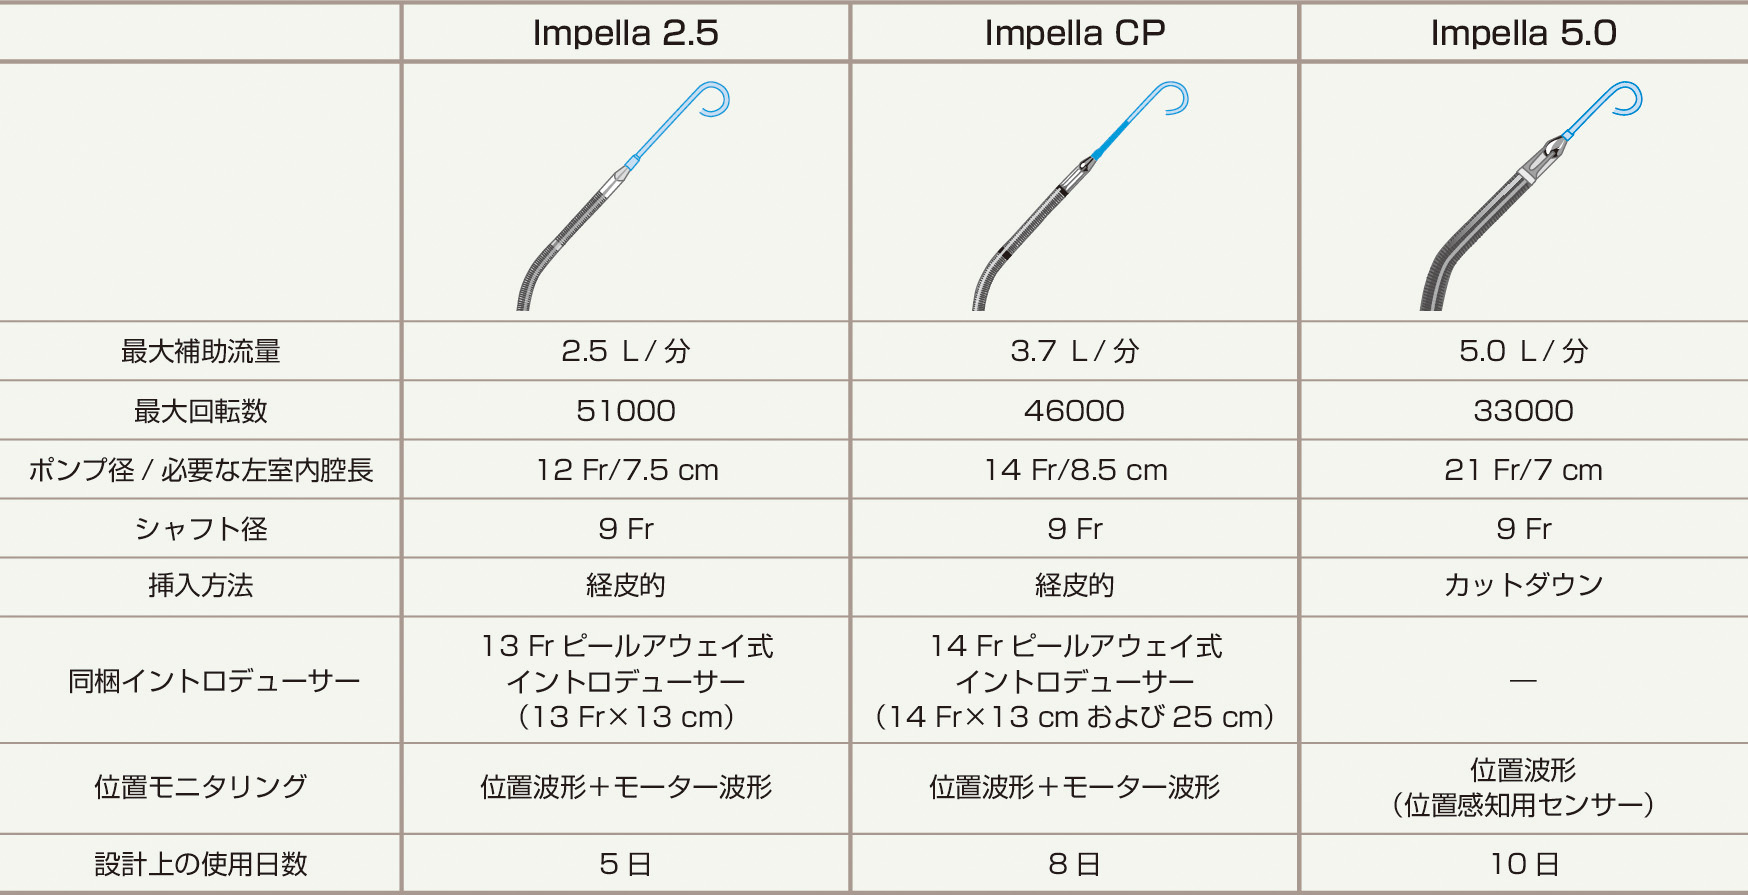 ⓔ図6-2-4　Impella 2.5, Impella CP, Impella 5.0の比較 (Abiomed社より提供資料) 